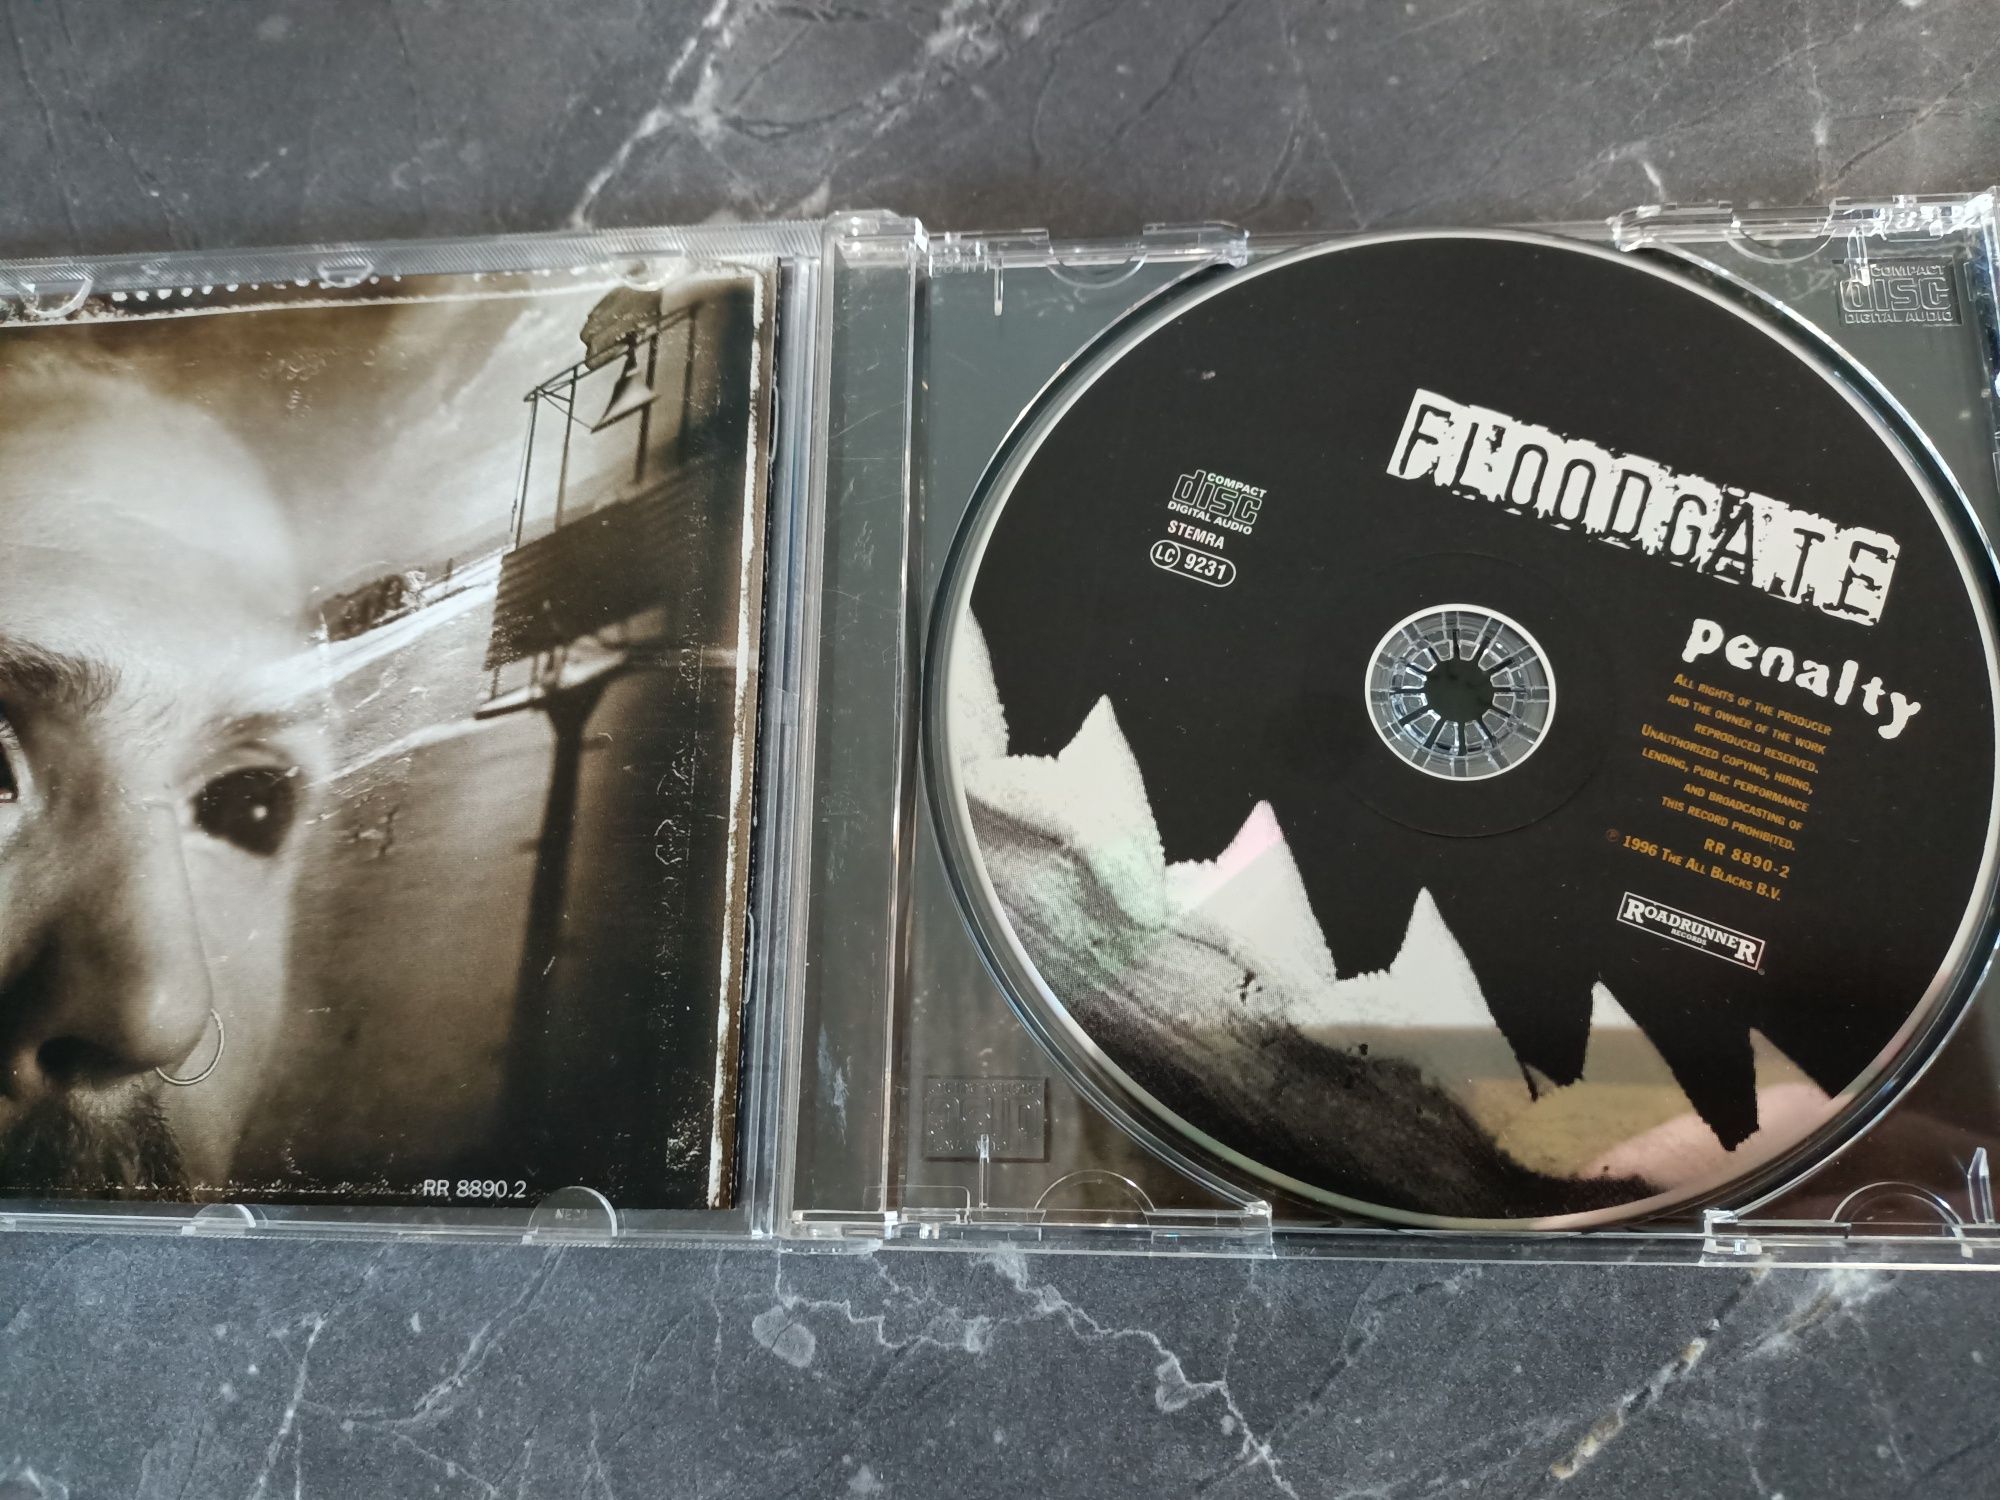 Floodgate - Penalty (CD, Album)(stoner)(vg+)